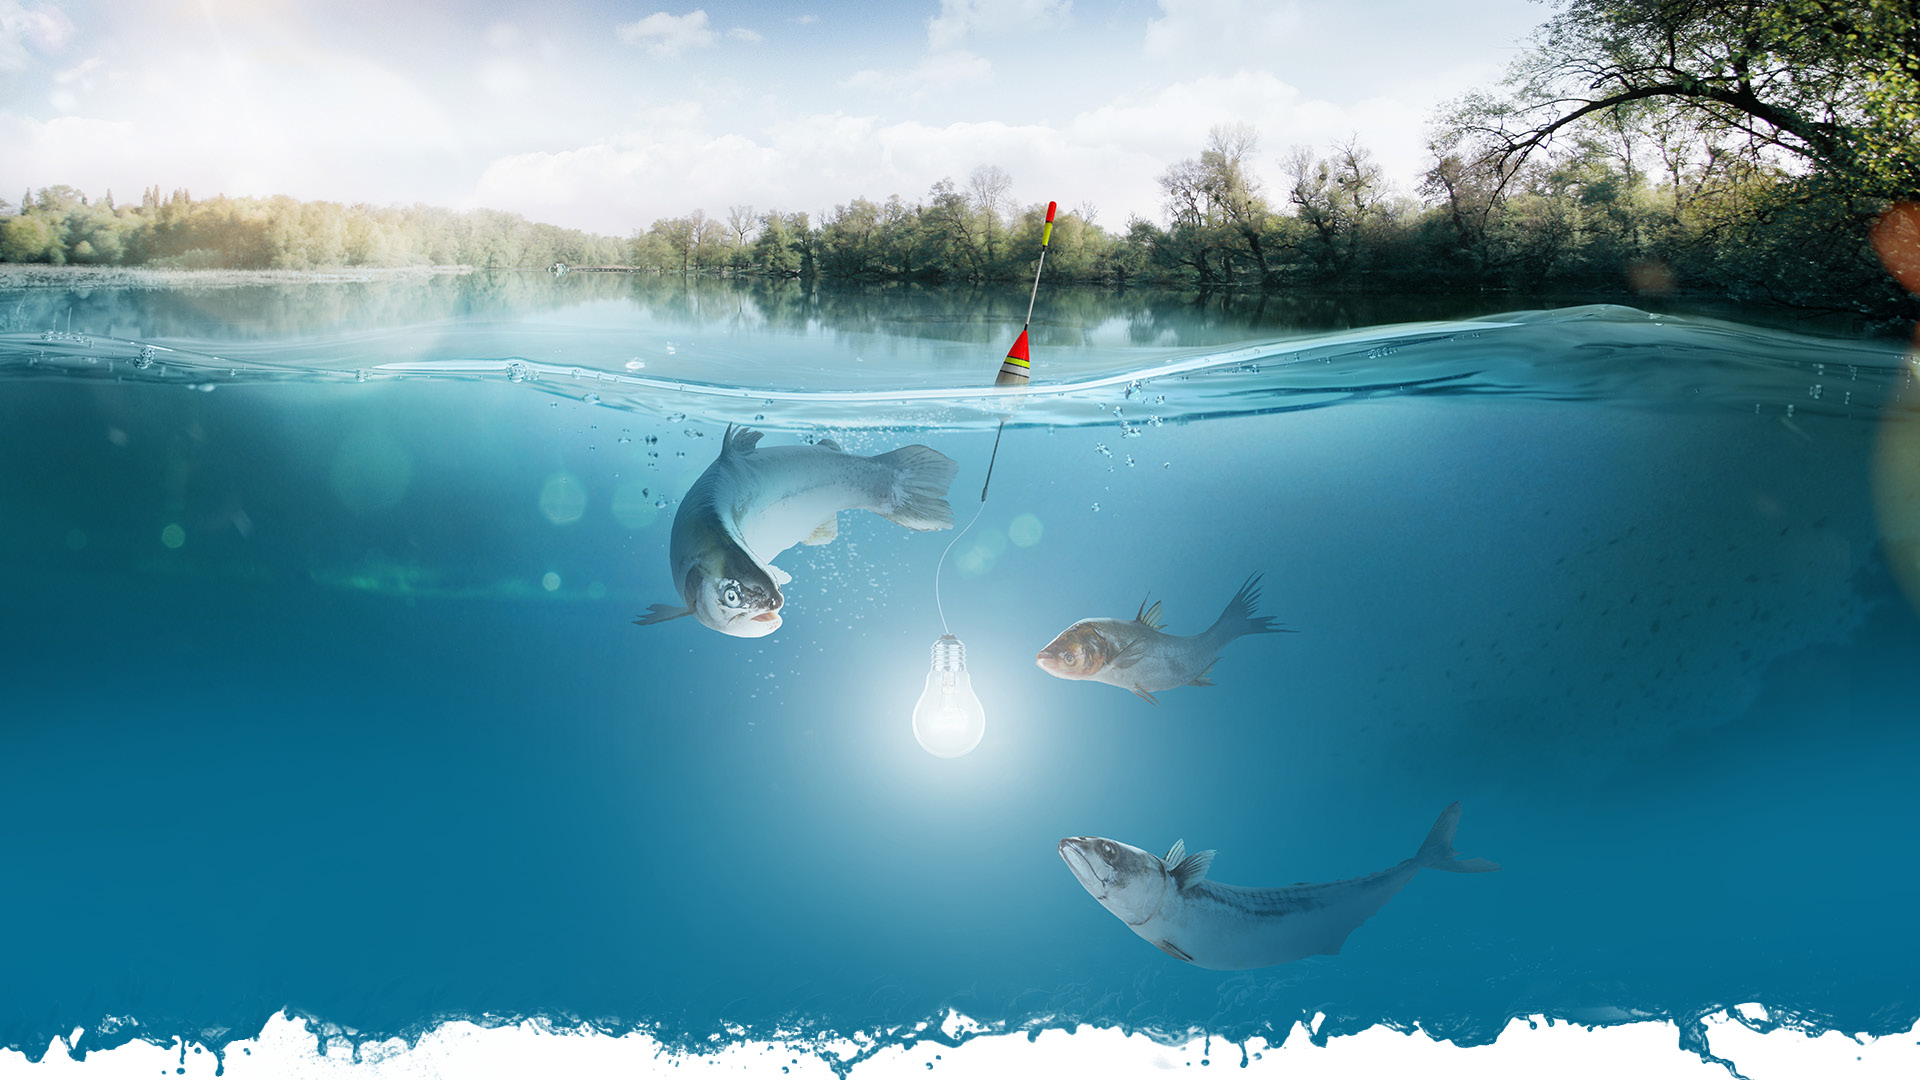 Fische schwimmen um einen Angelköder, an dem eine Glühbirne befestigt ist